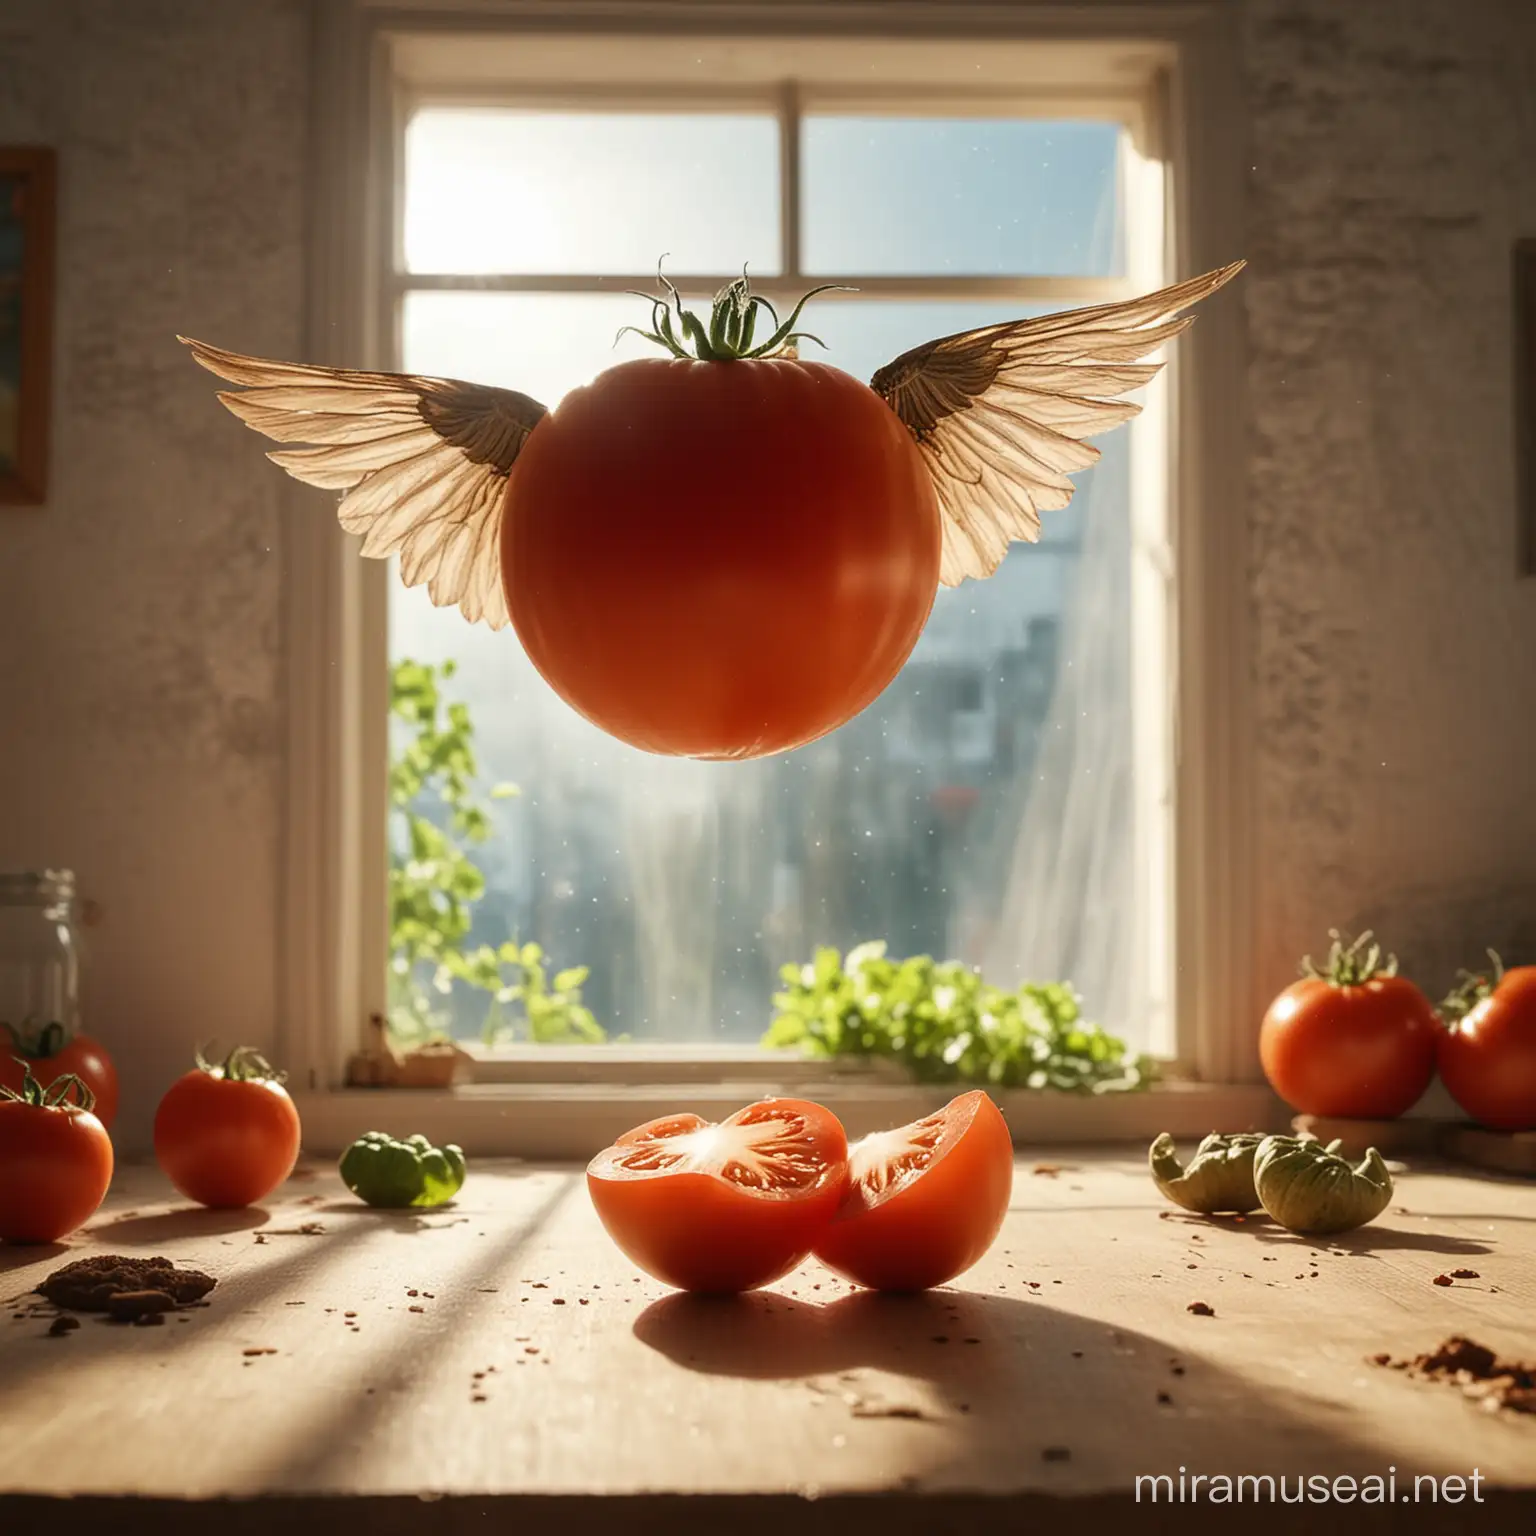 Riesige formatfüllende Tomate mit sehr großen Flügeln fliegt im Raum. Die Tomate ist um die X-Achse um 20 Grad gedreht. Die großen Flügel flattern schnell und haben eine Bewegungsunschärfe. Untergrund alter Holztisch. Hintergrund alte Küche mit Fenster, durch das die Sonne scheint. Tiefenschärfe